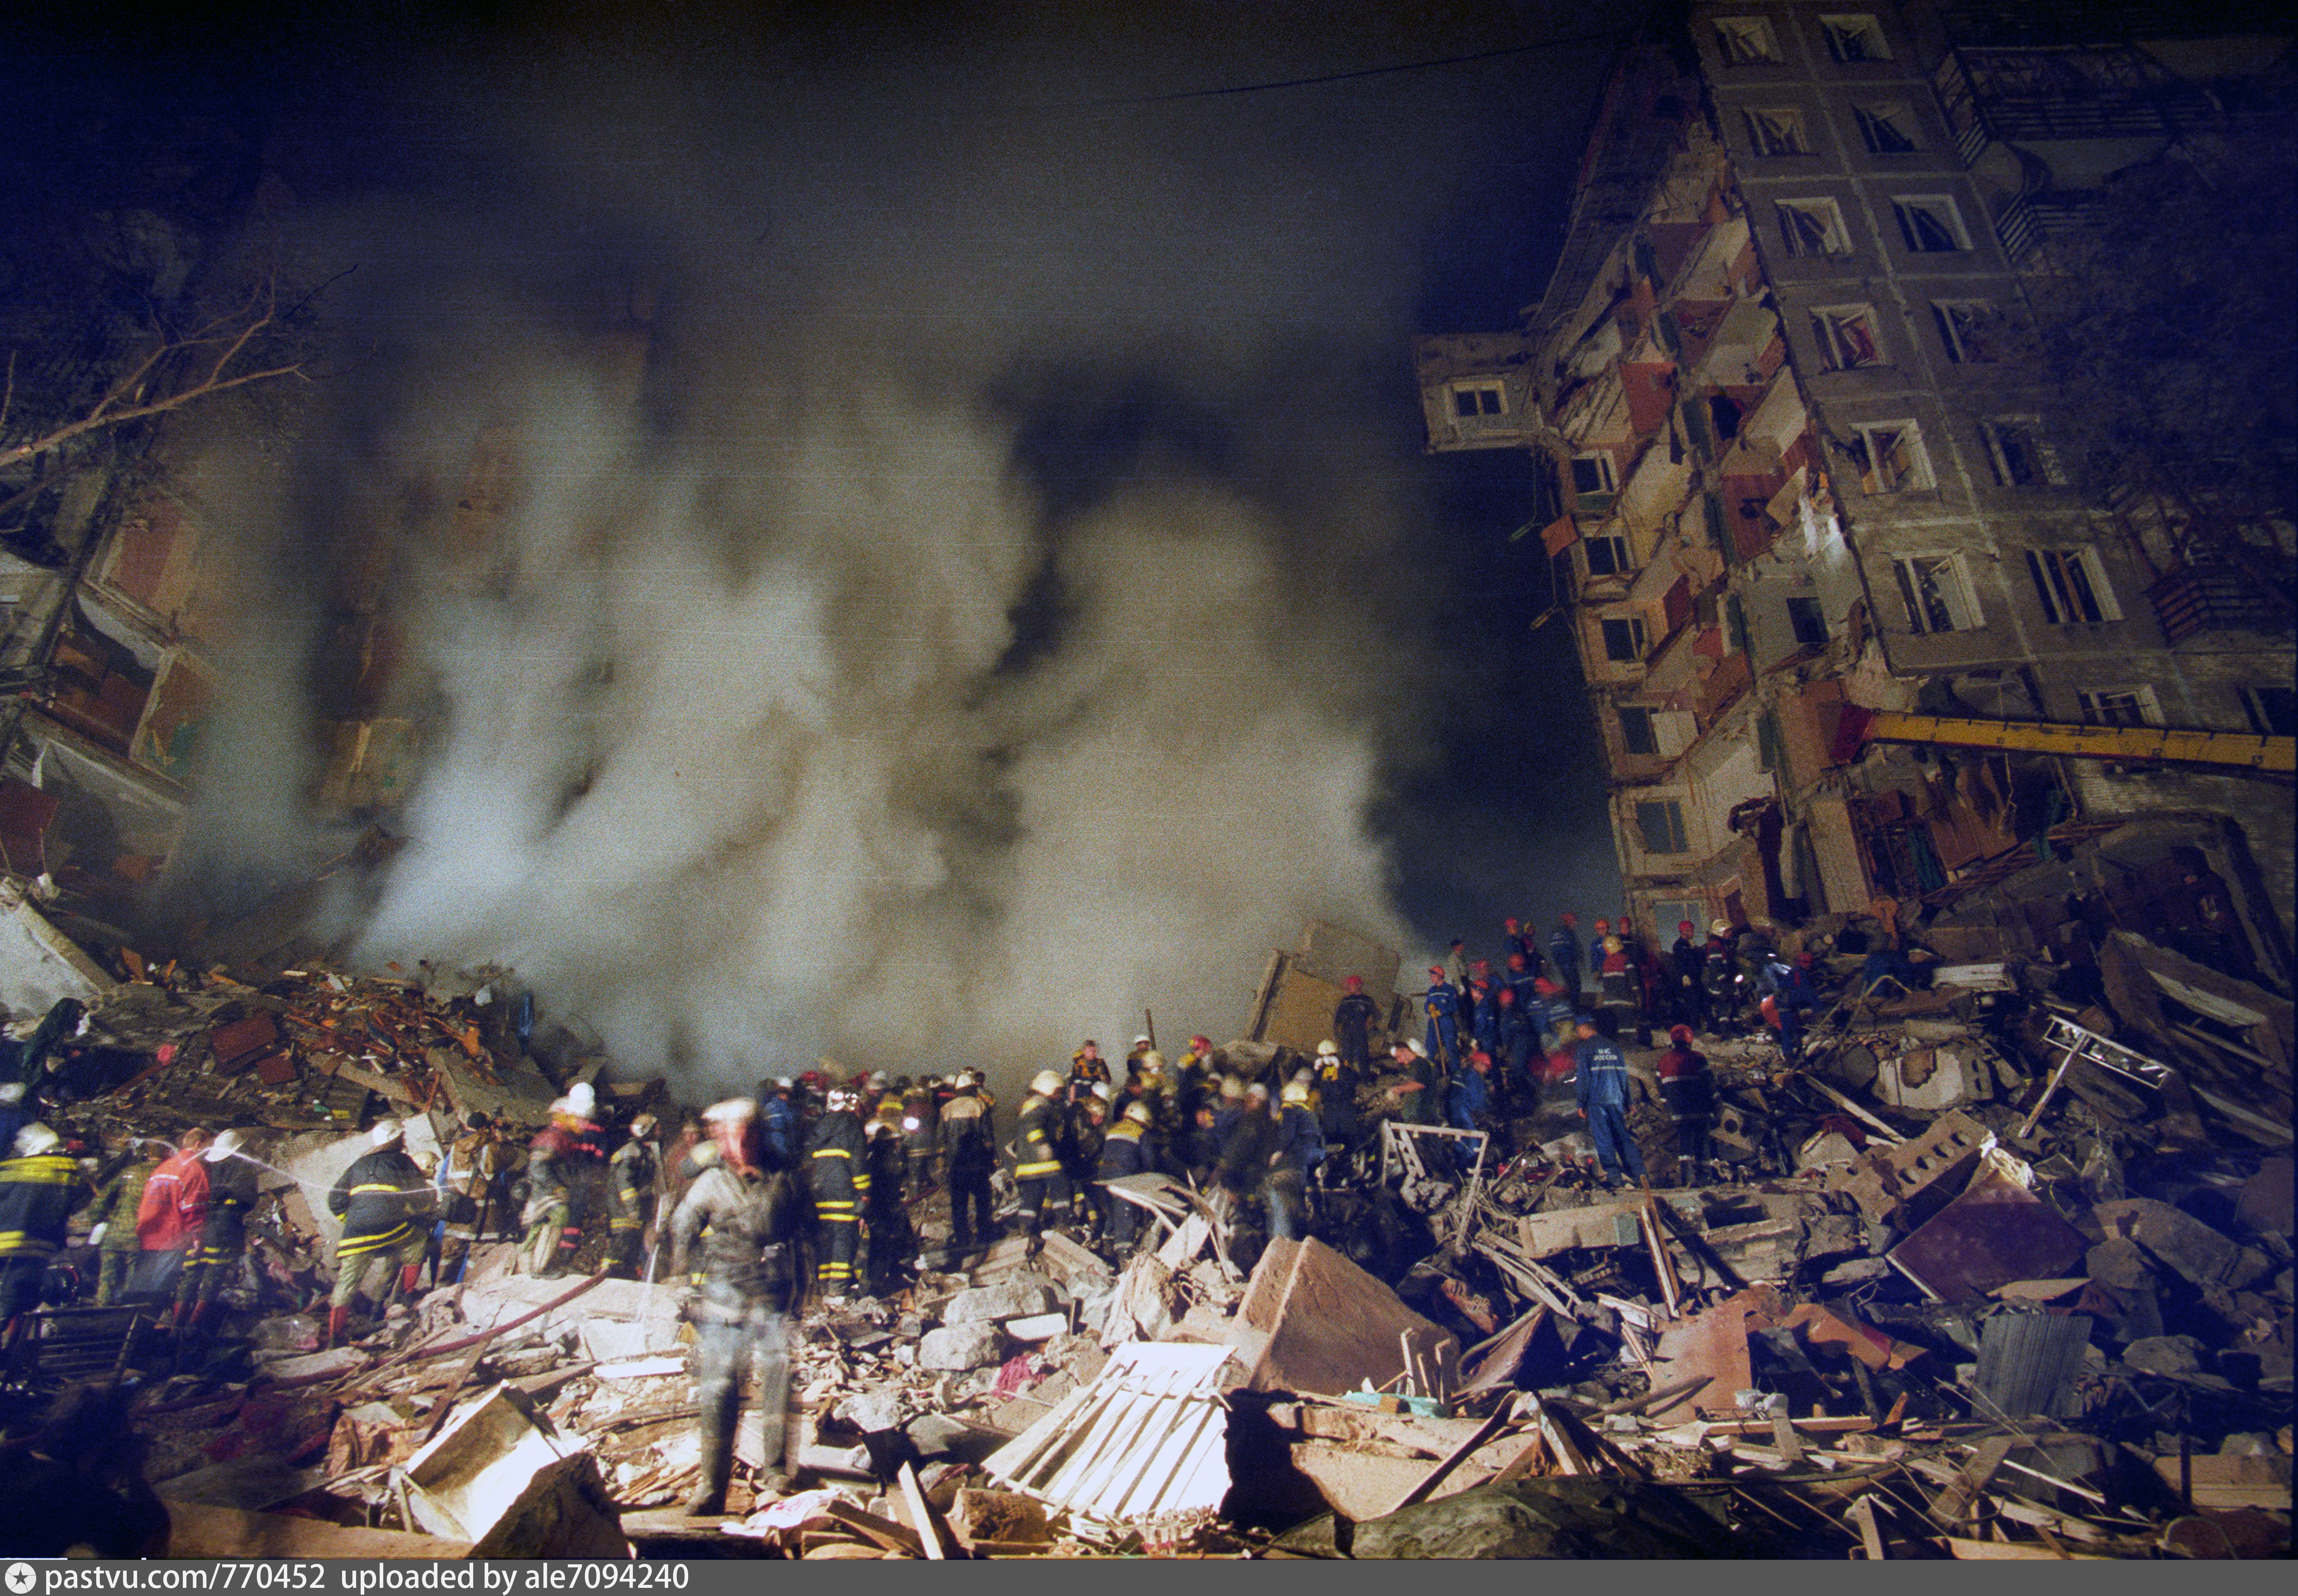 Теракты 20 века. Взорванный дом на Гурьянова 1999 год. Теракт 1999 года в Москве на улице Гурьянова.